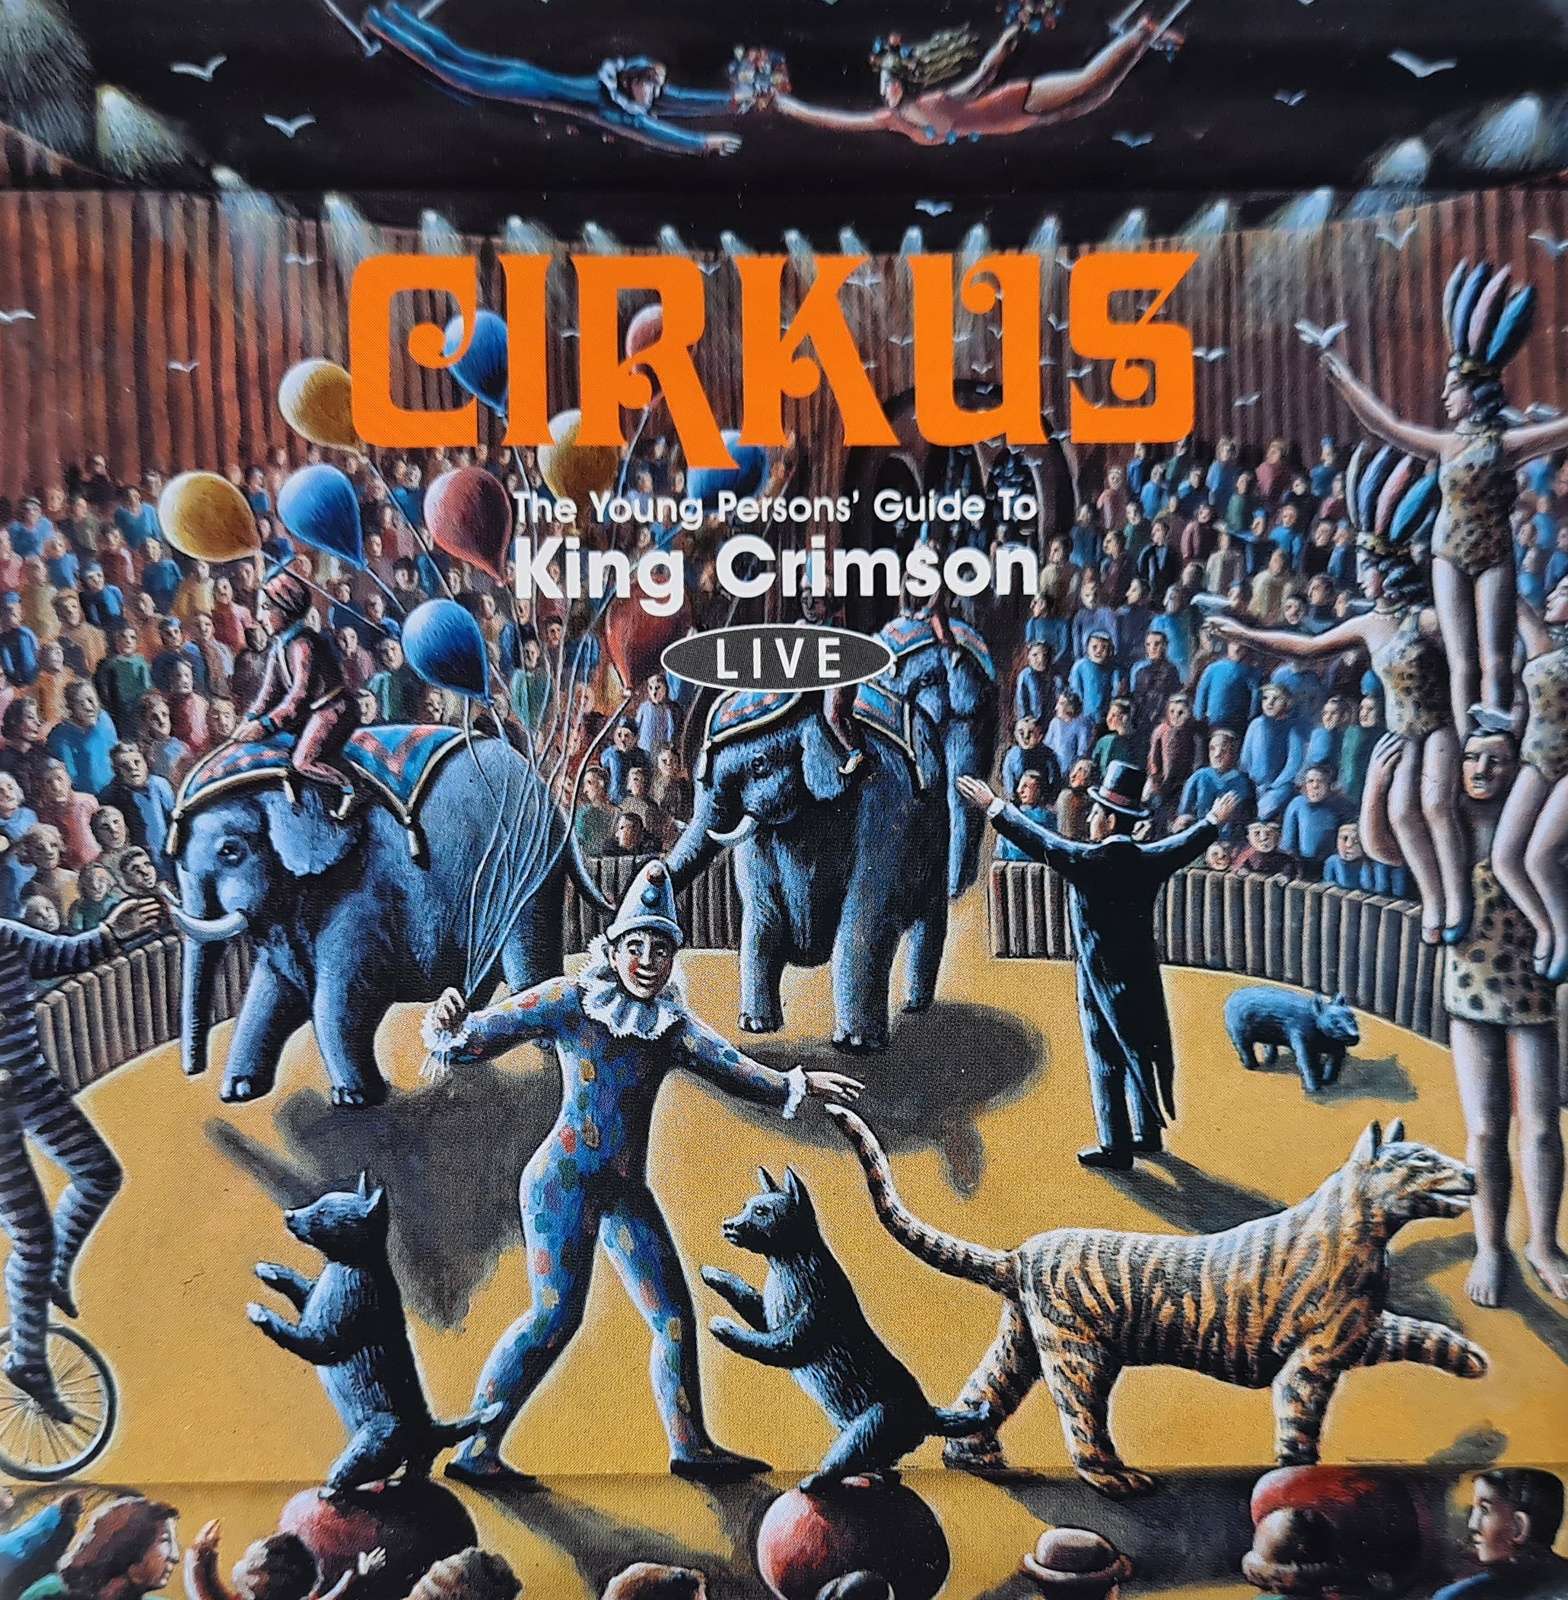 King Crimson - Cirkus (CD)